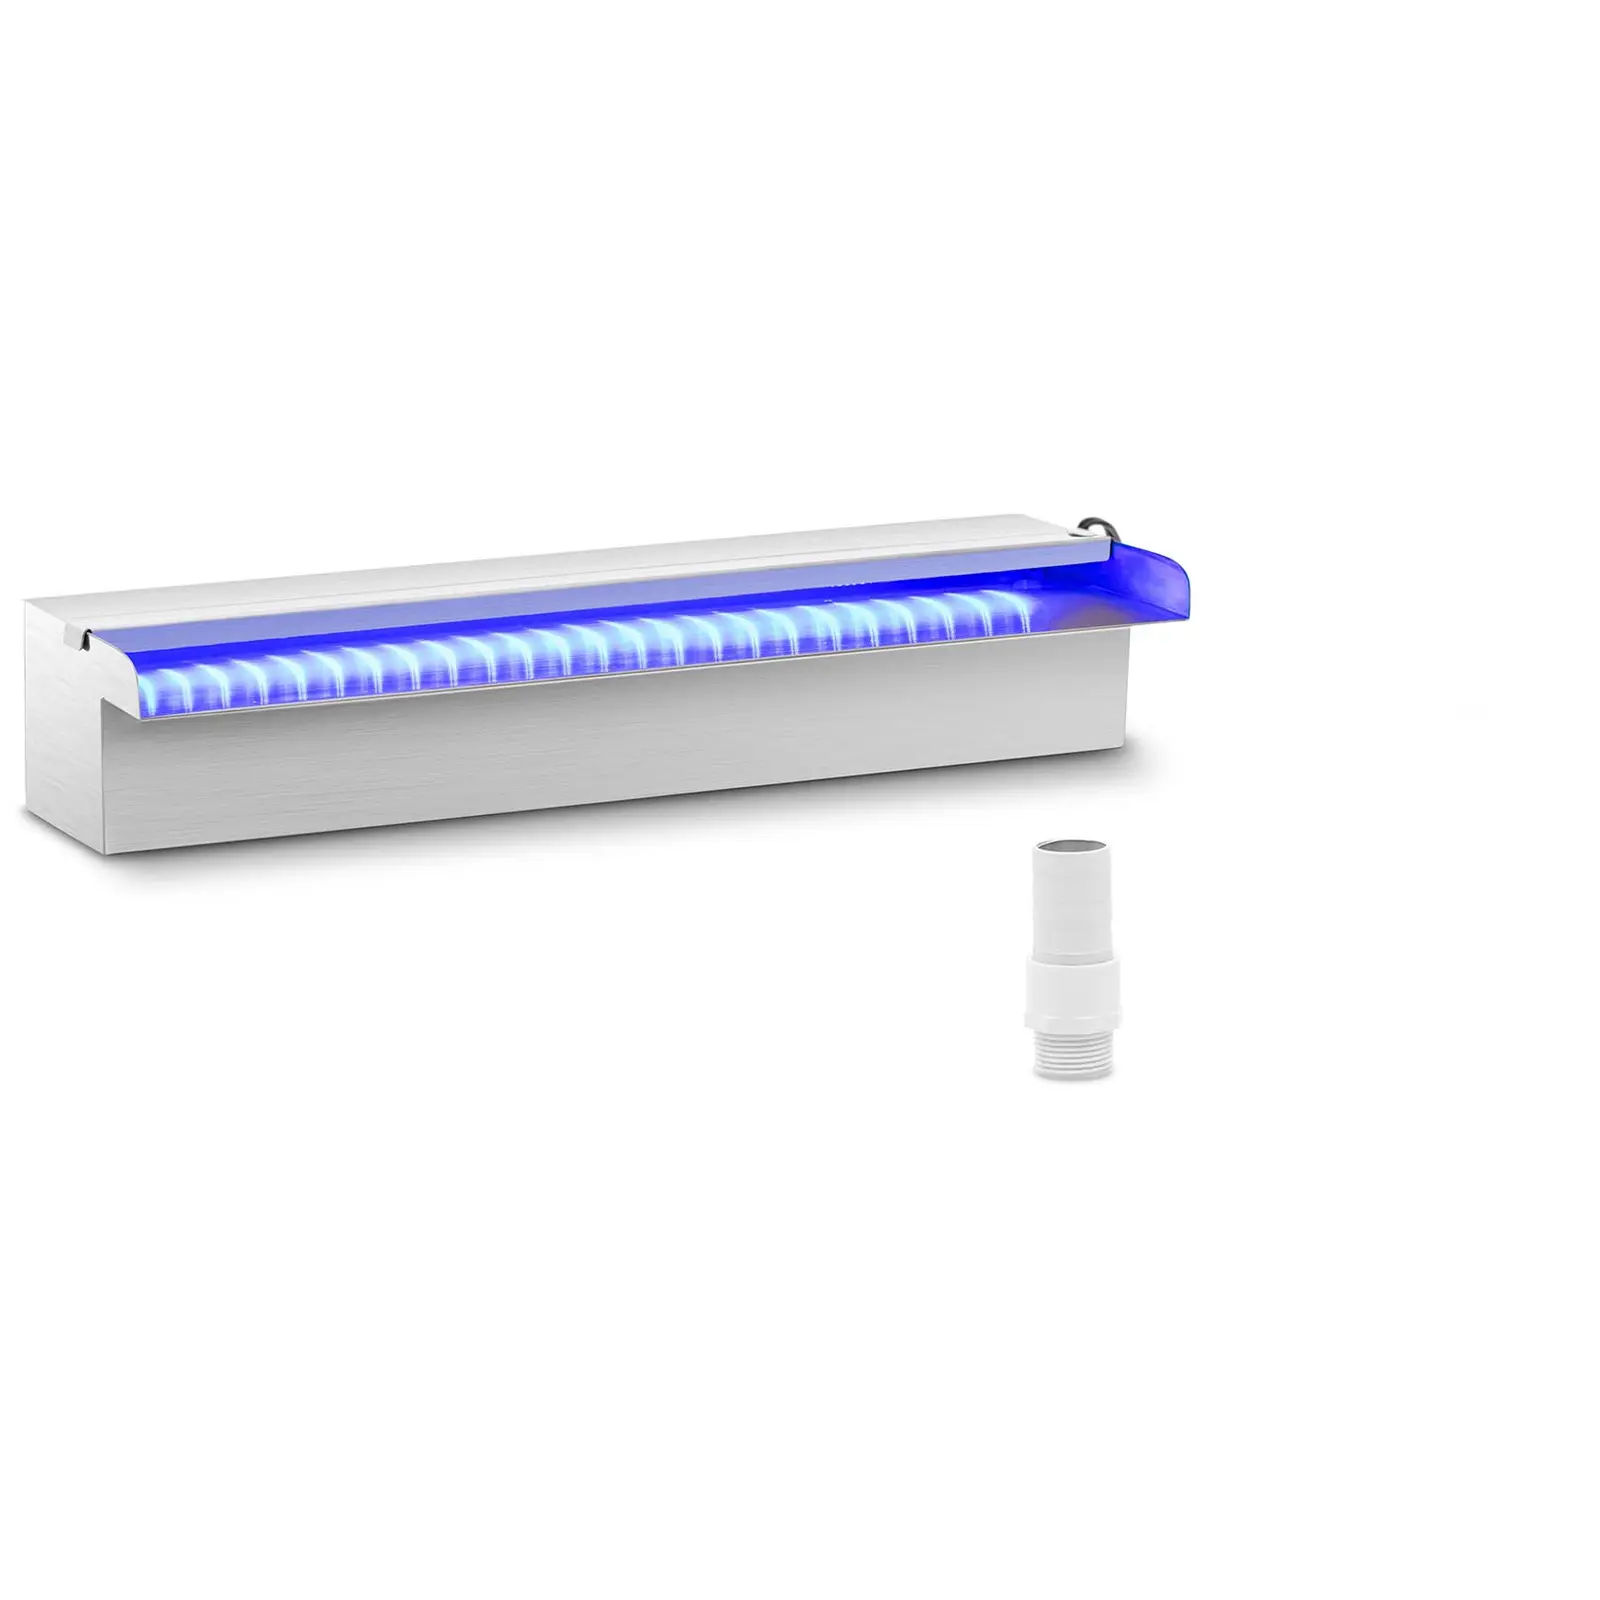 Schwalldusche - 45 cm - LED-Beleuchtung - Blau / Weiß - offener Wasserauslauf